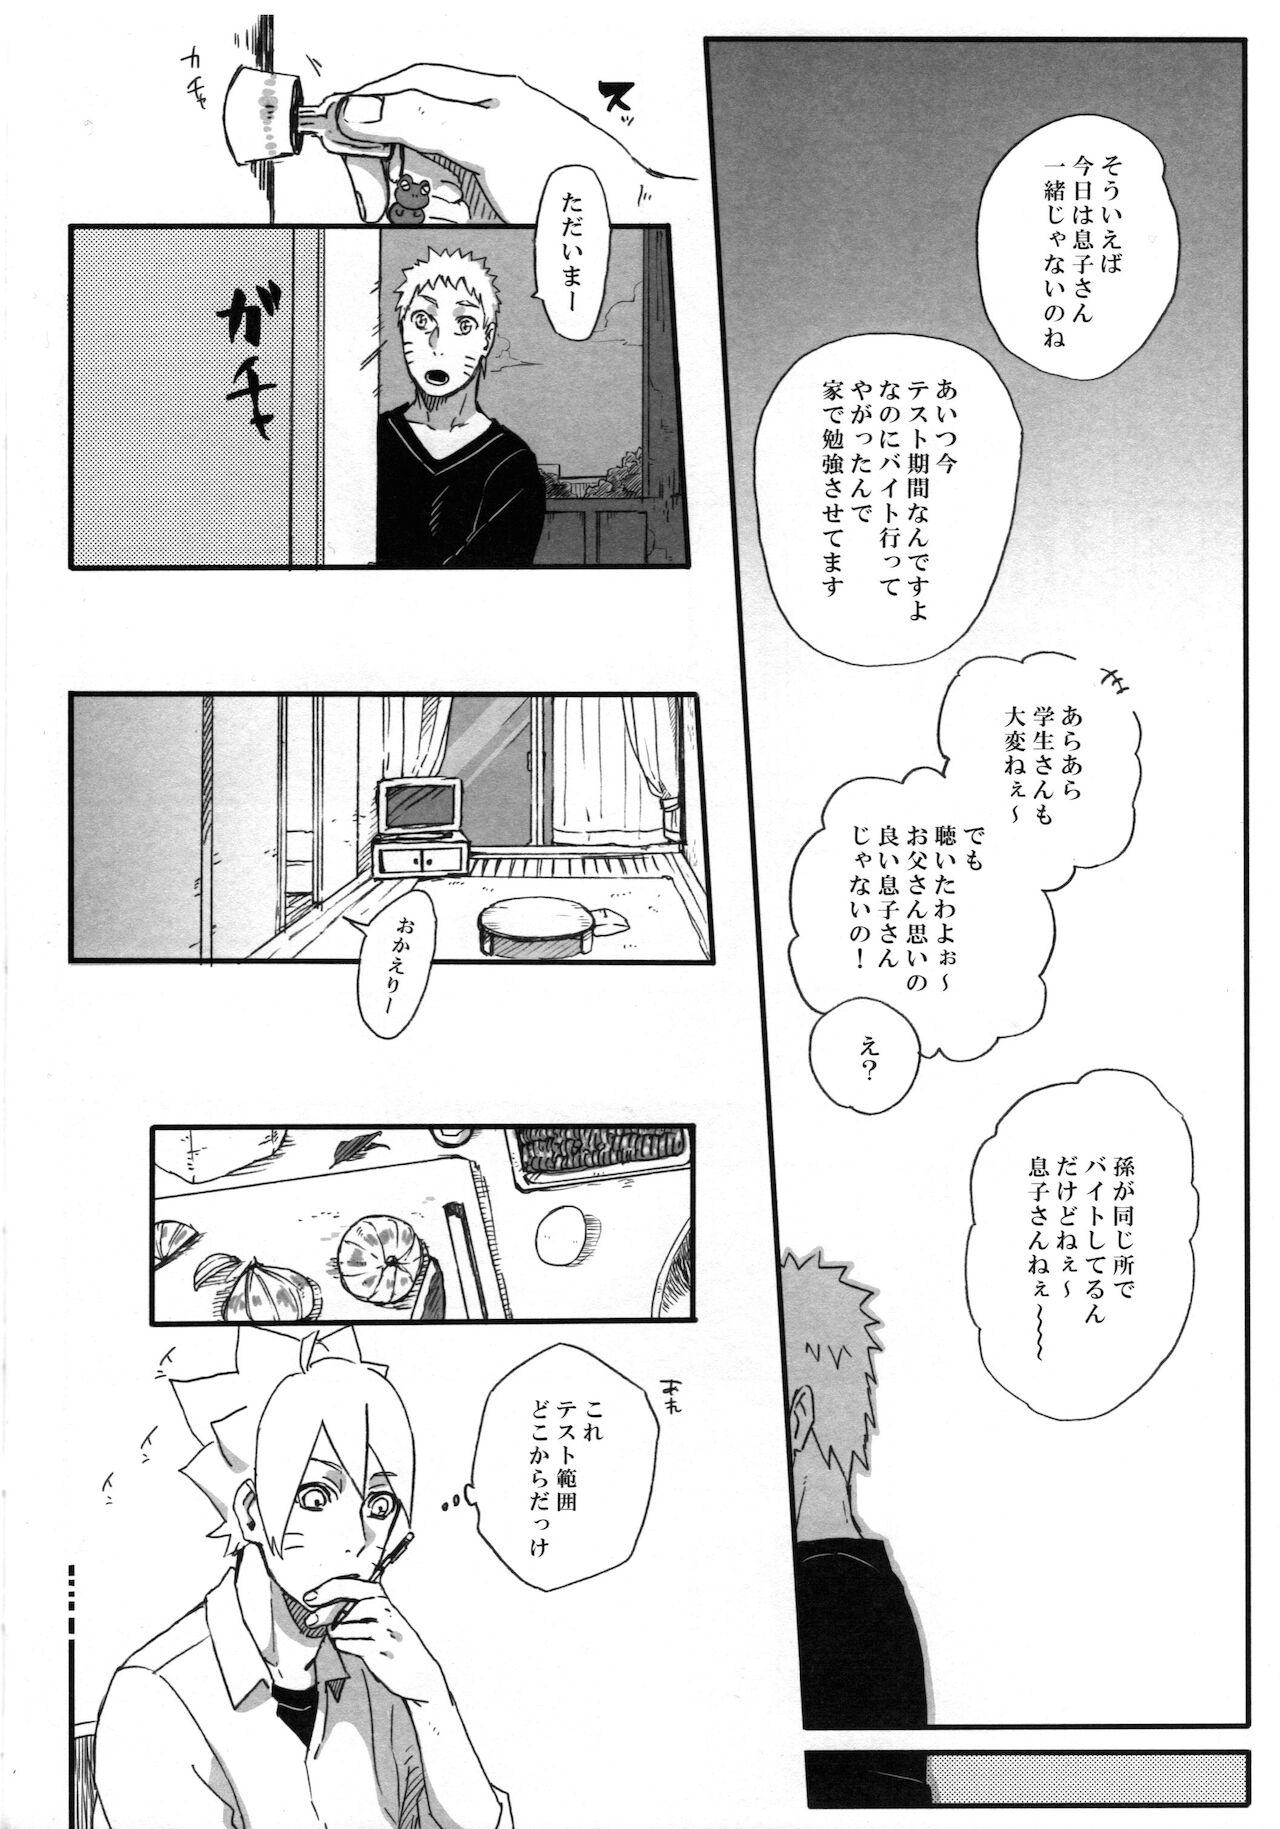 Putinha Getsuyou wa itsumo chikoku sunzen - Naruto Passivo - Page 7